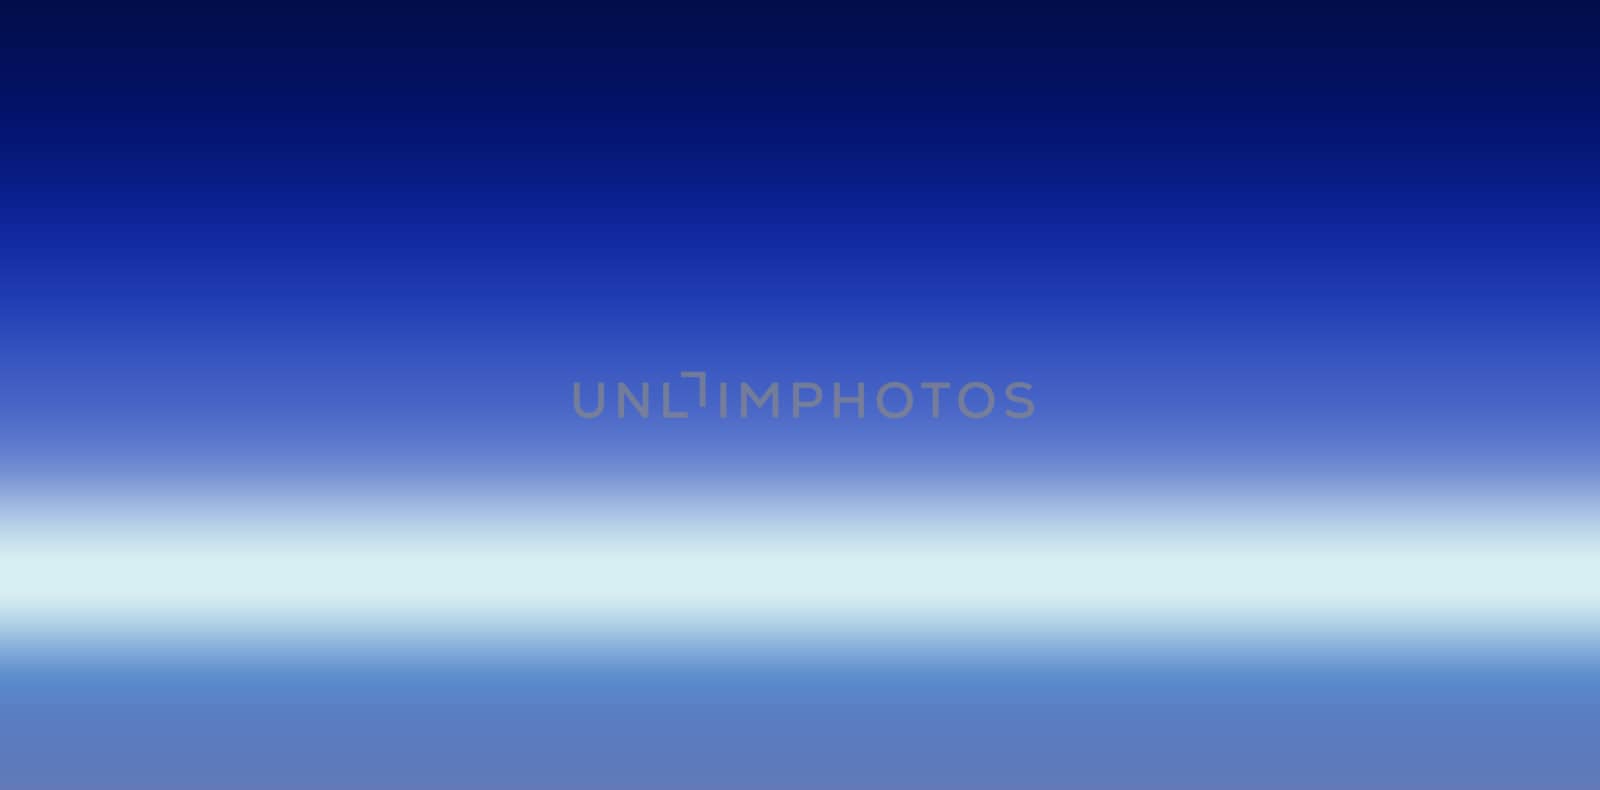 A blurry shot of a blue light